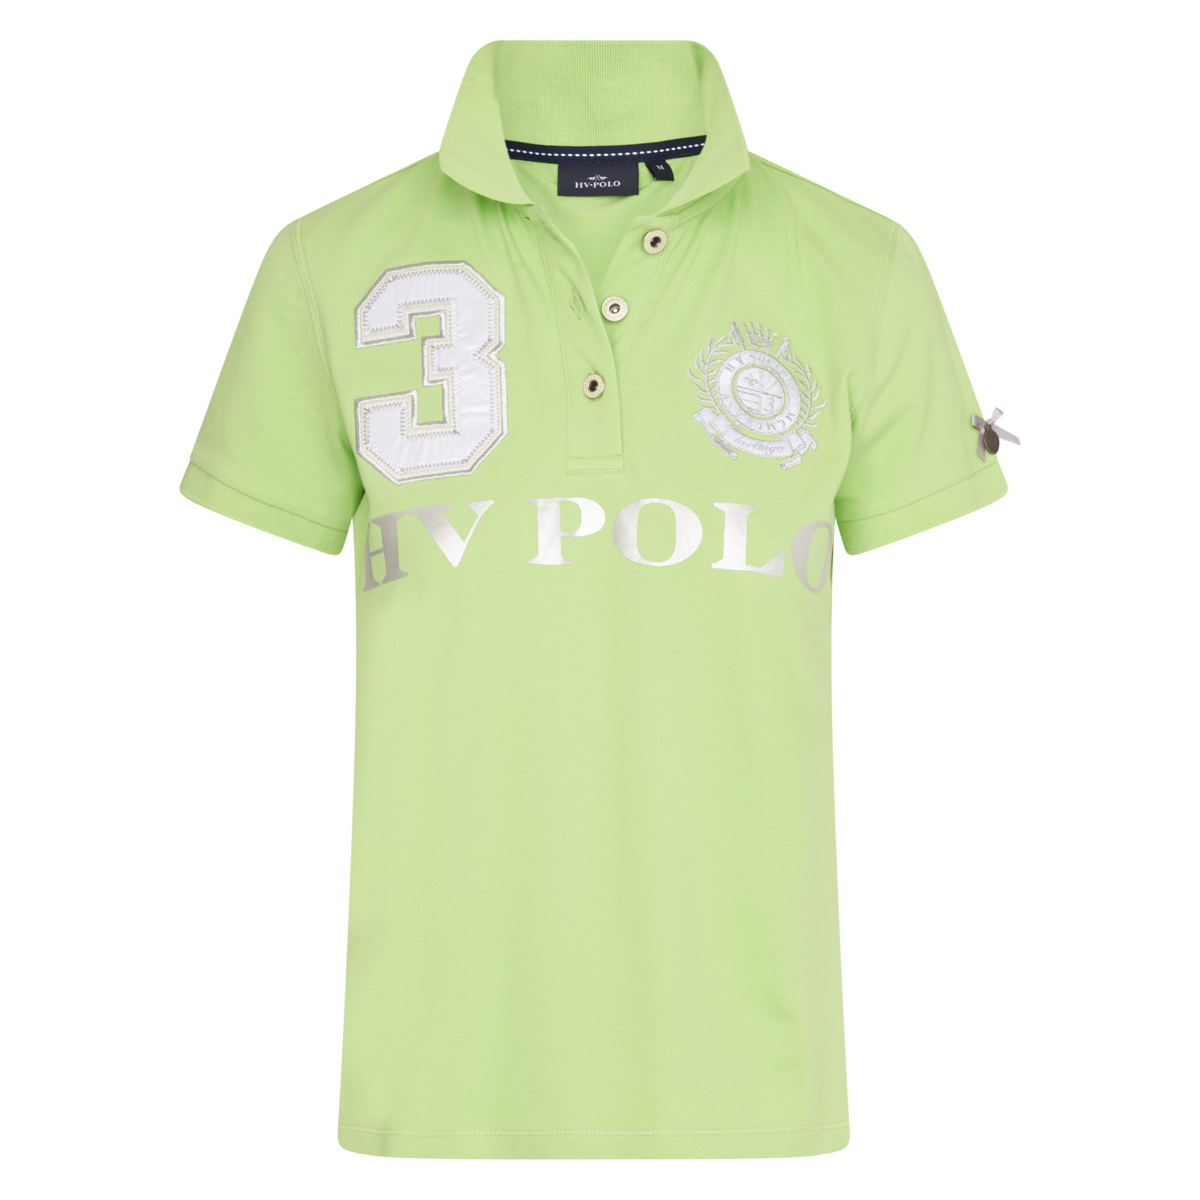 Polo Hv Polo Favouritas Eq Lichtgroen-groen, XL in lichtgroen/groen